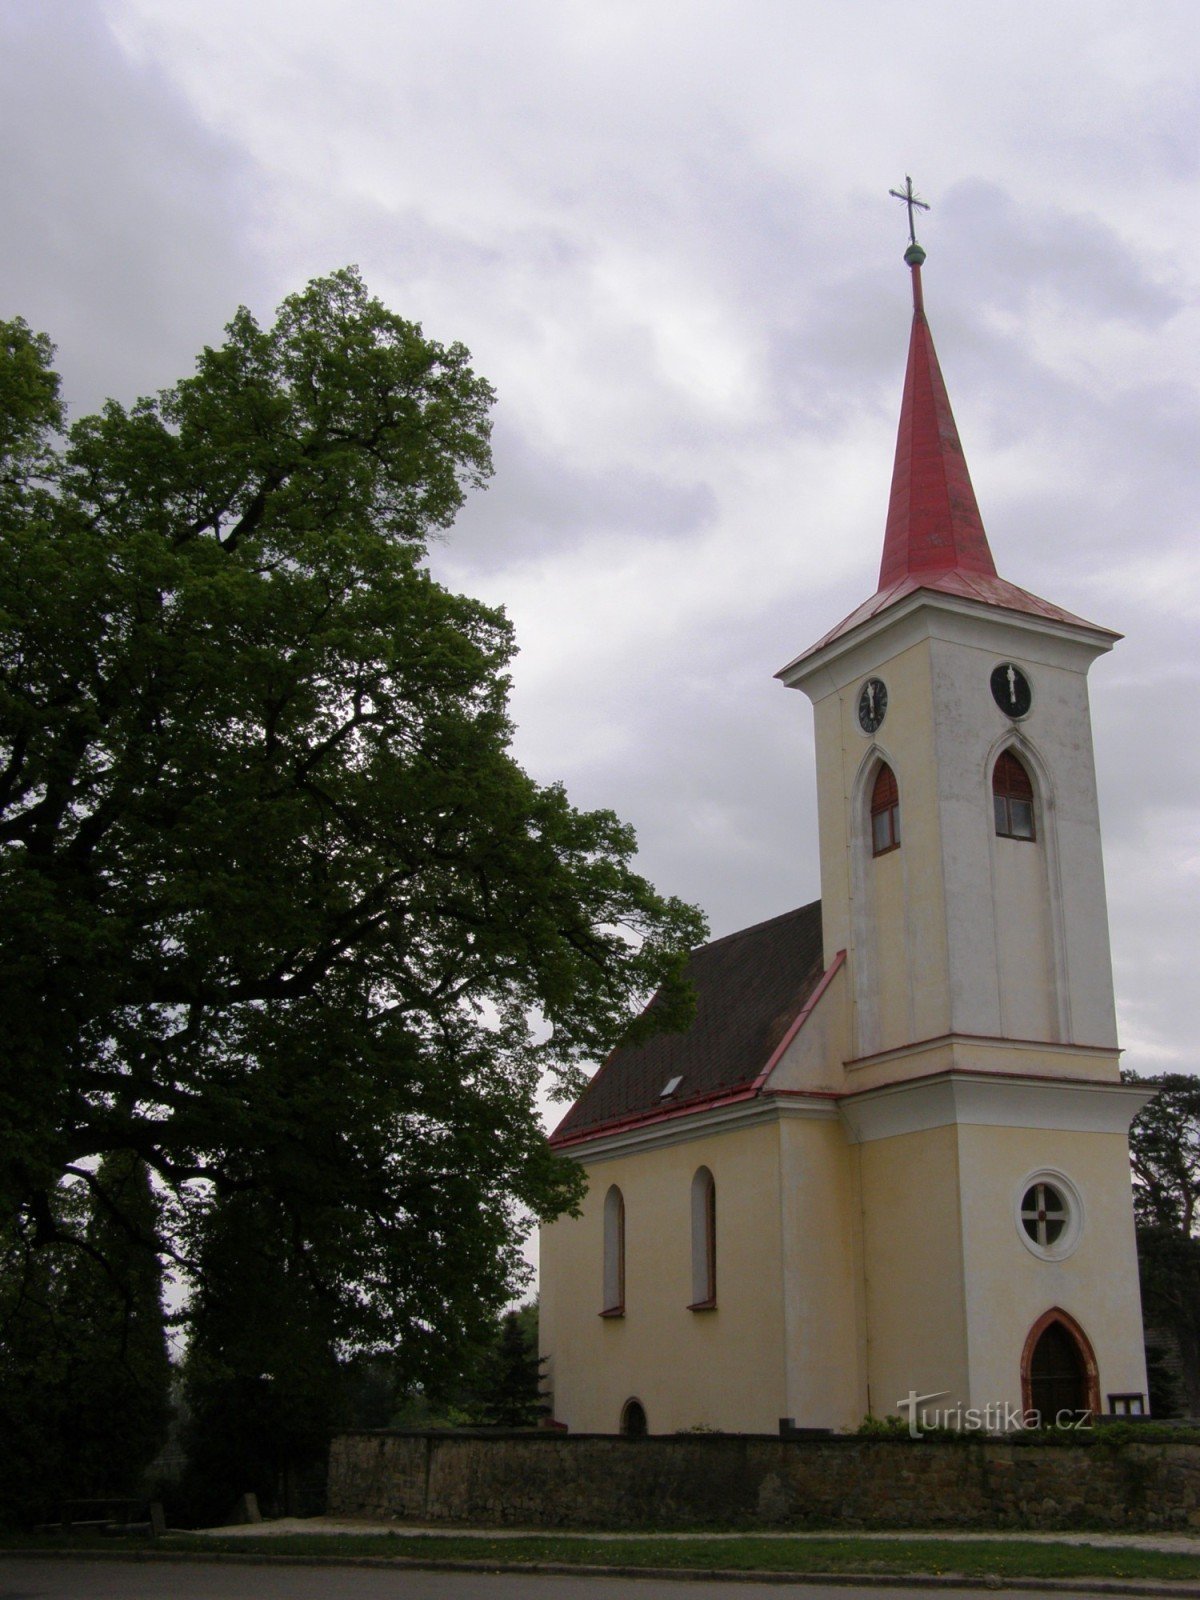 Velichovky - Kyrkan av Herrens förvandling